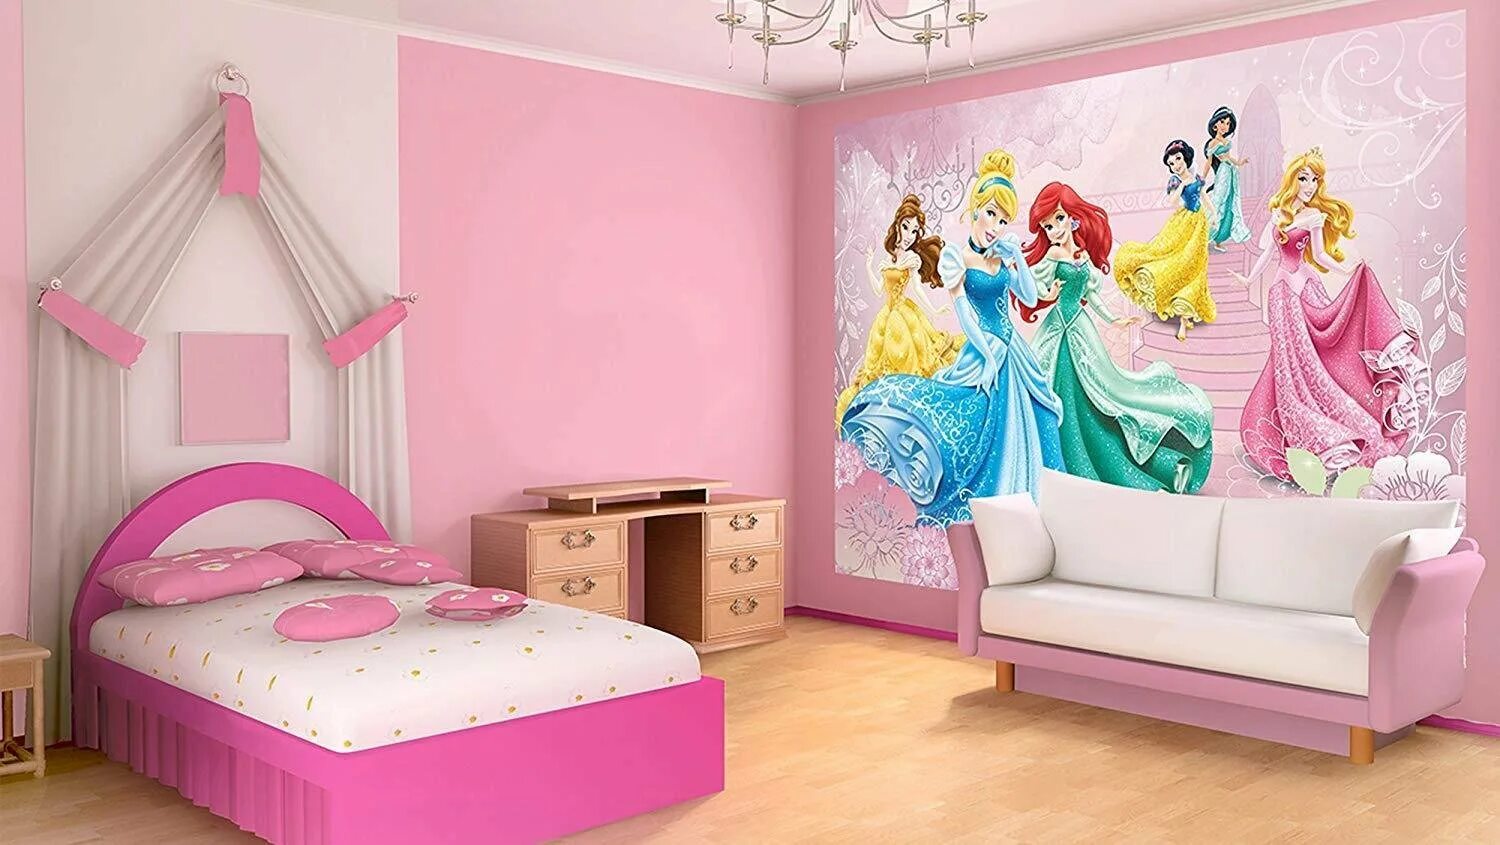 Обои для детской спальни. Комната принцессы. Детская комната в стиле принцессы. Комната принцессы для девочки. Фотообои для детской комнаты девочке.